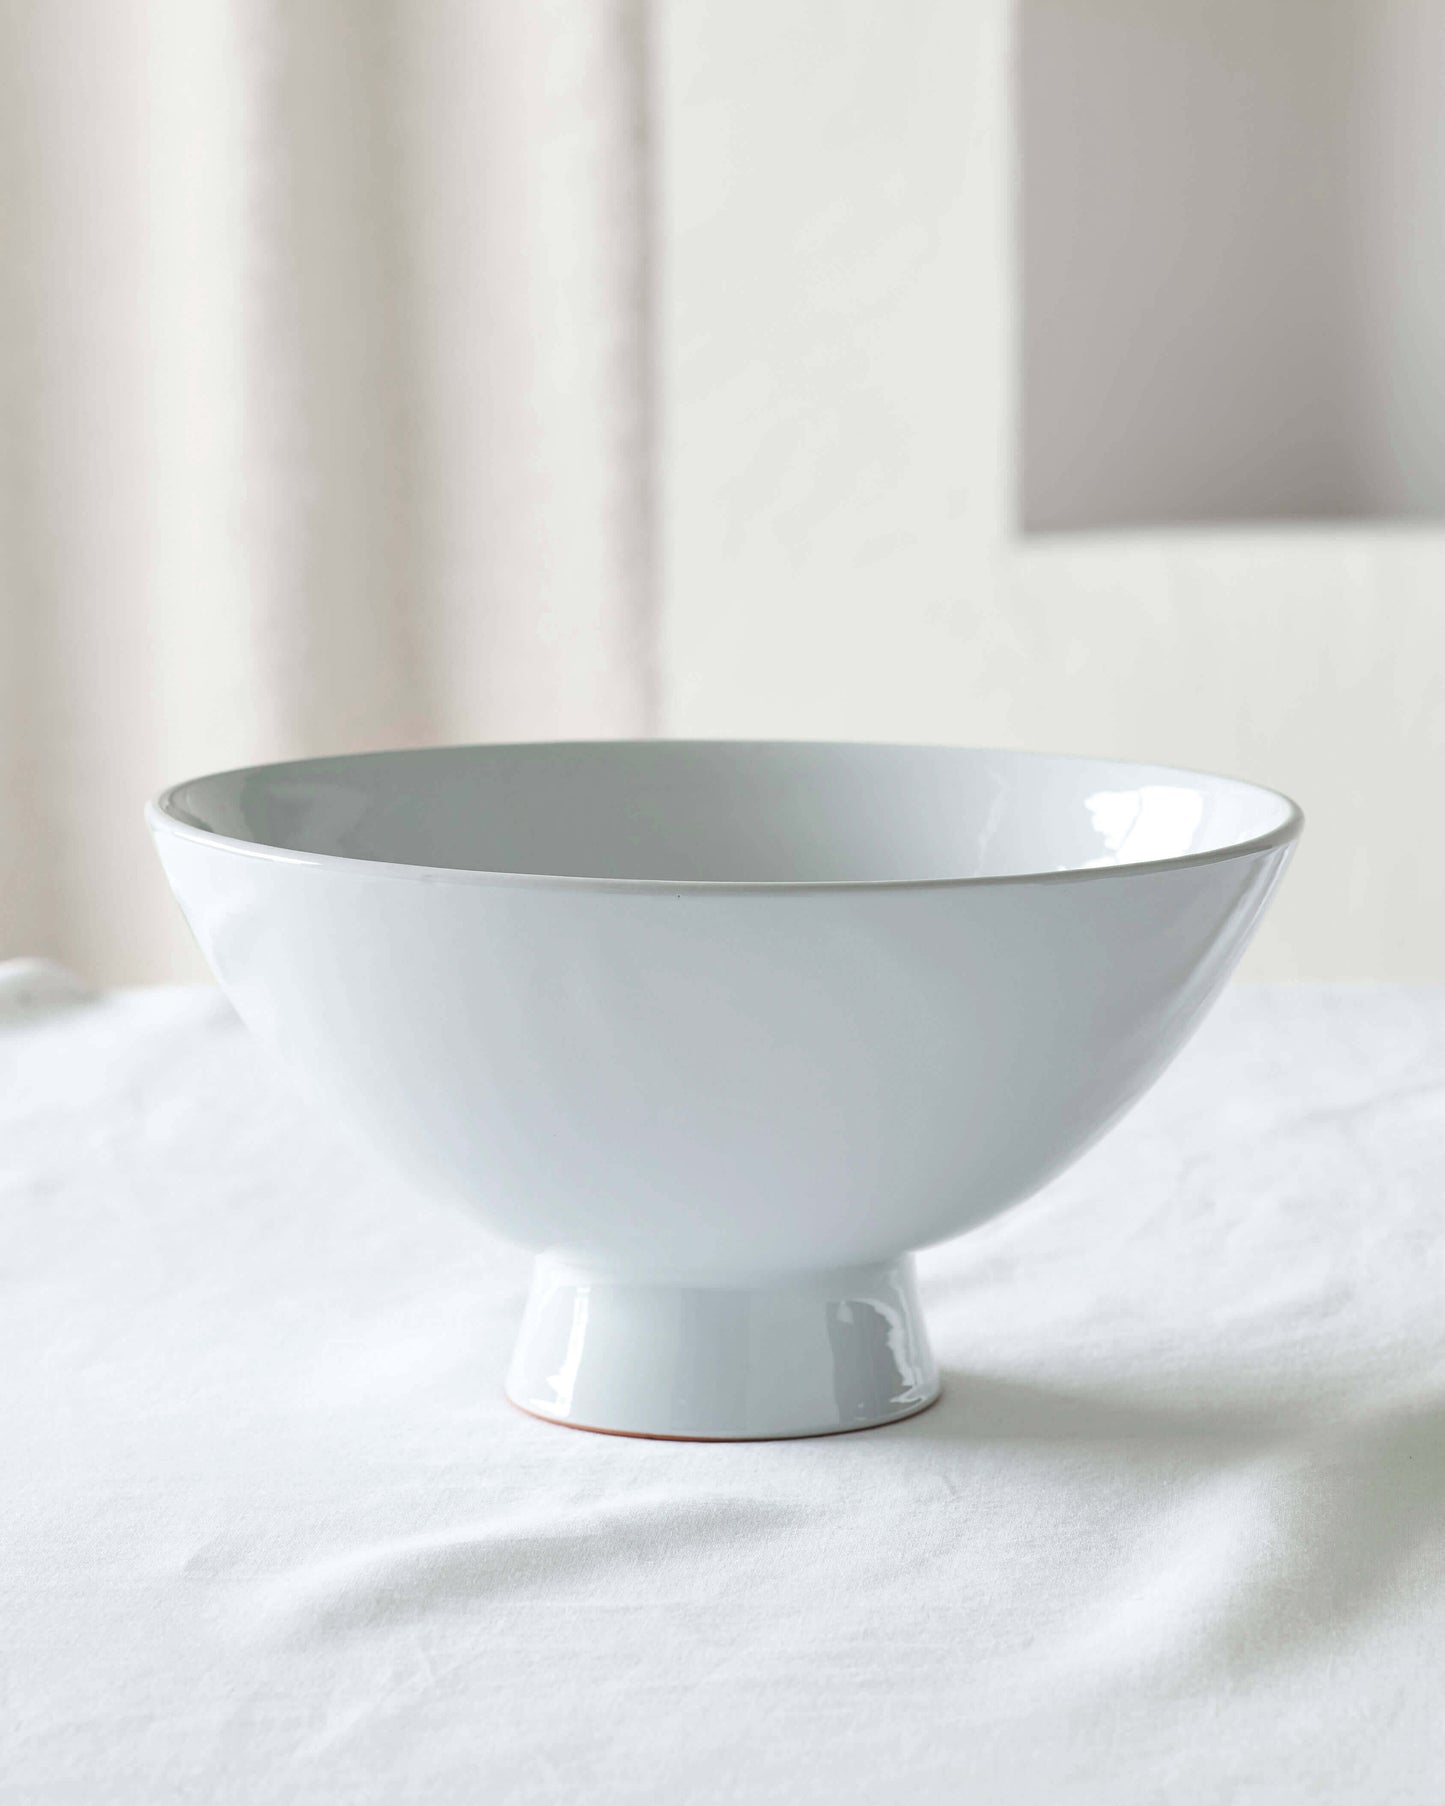 
                  
                    Light gray Rami Pedestal bowl, handmade ceramics by Fairkind.
                  
                